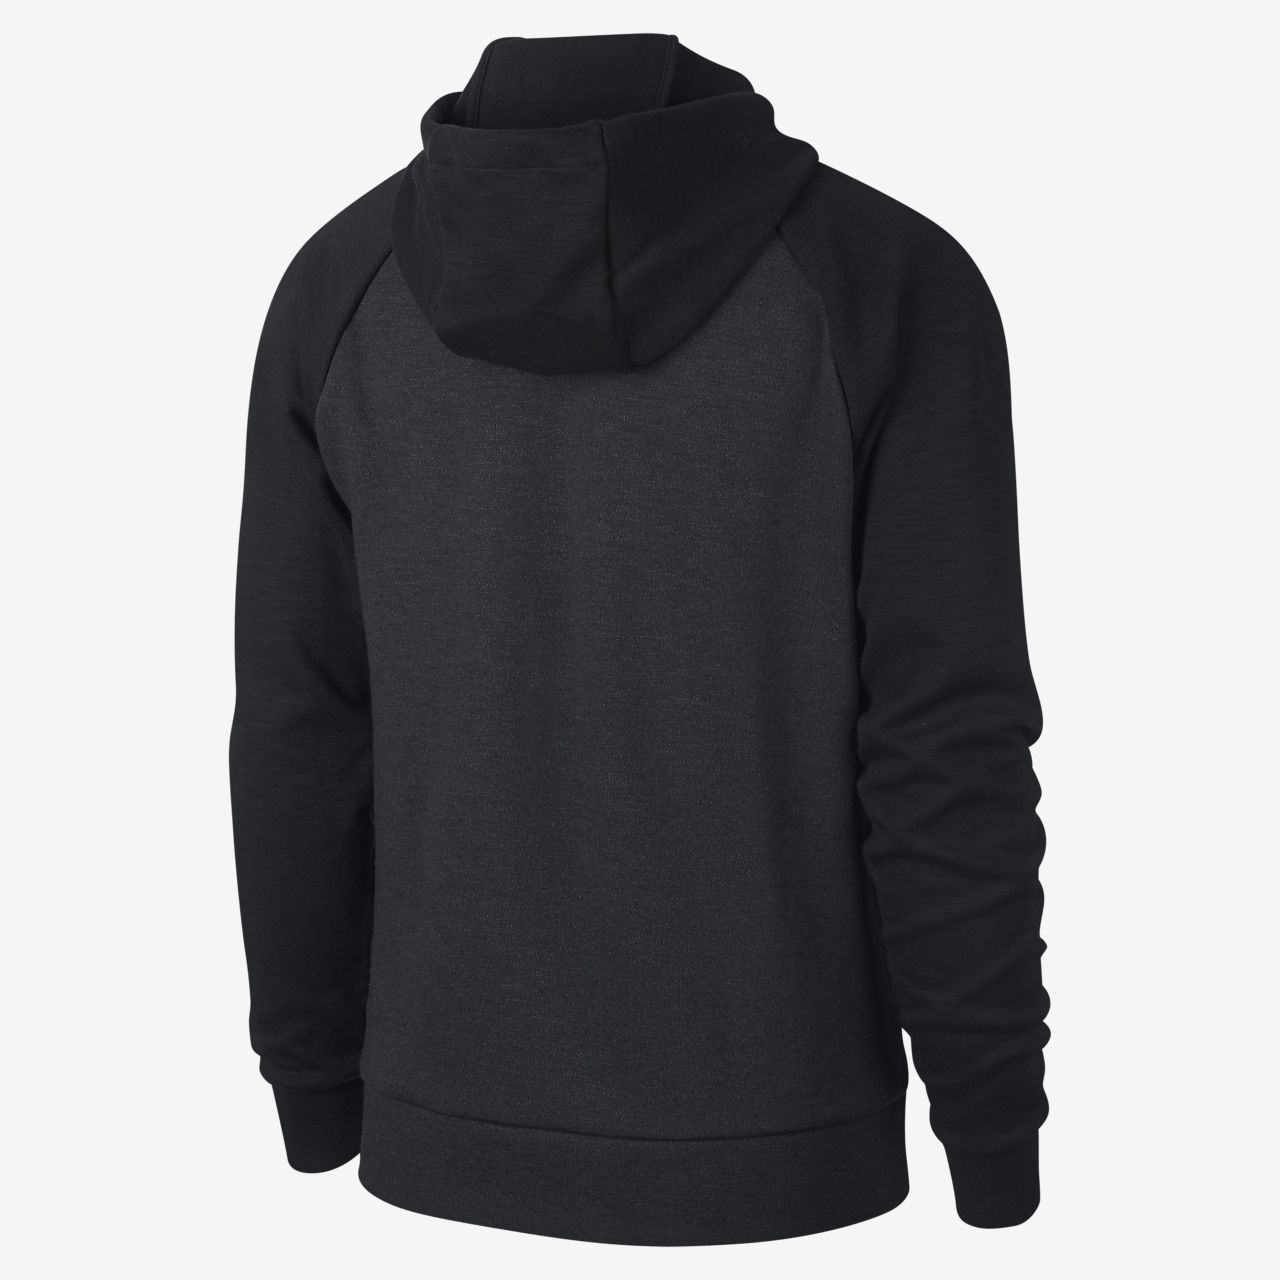 nike zip hoodie mens black